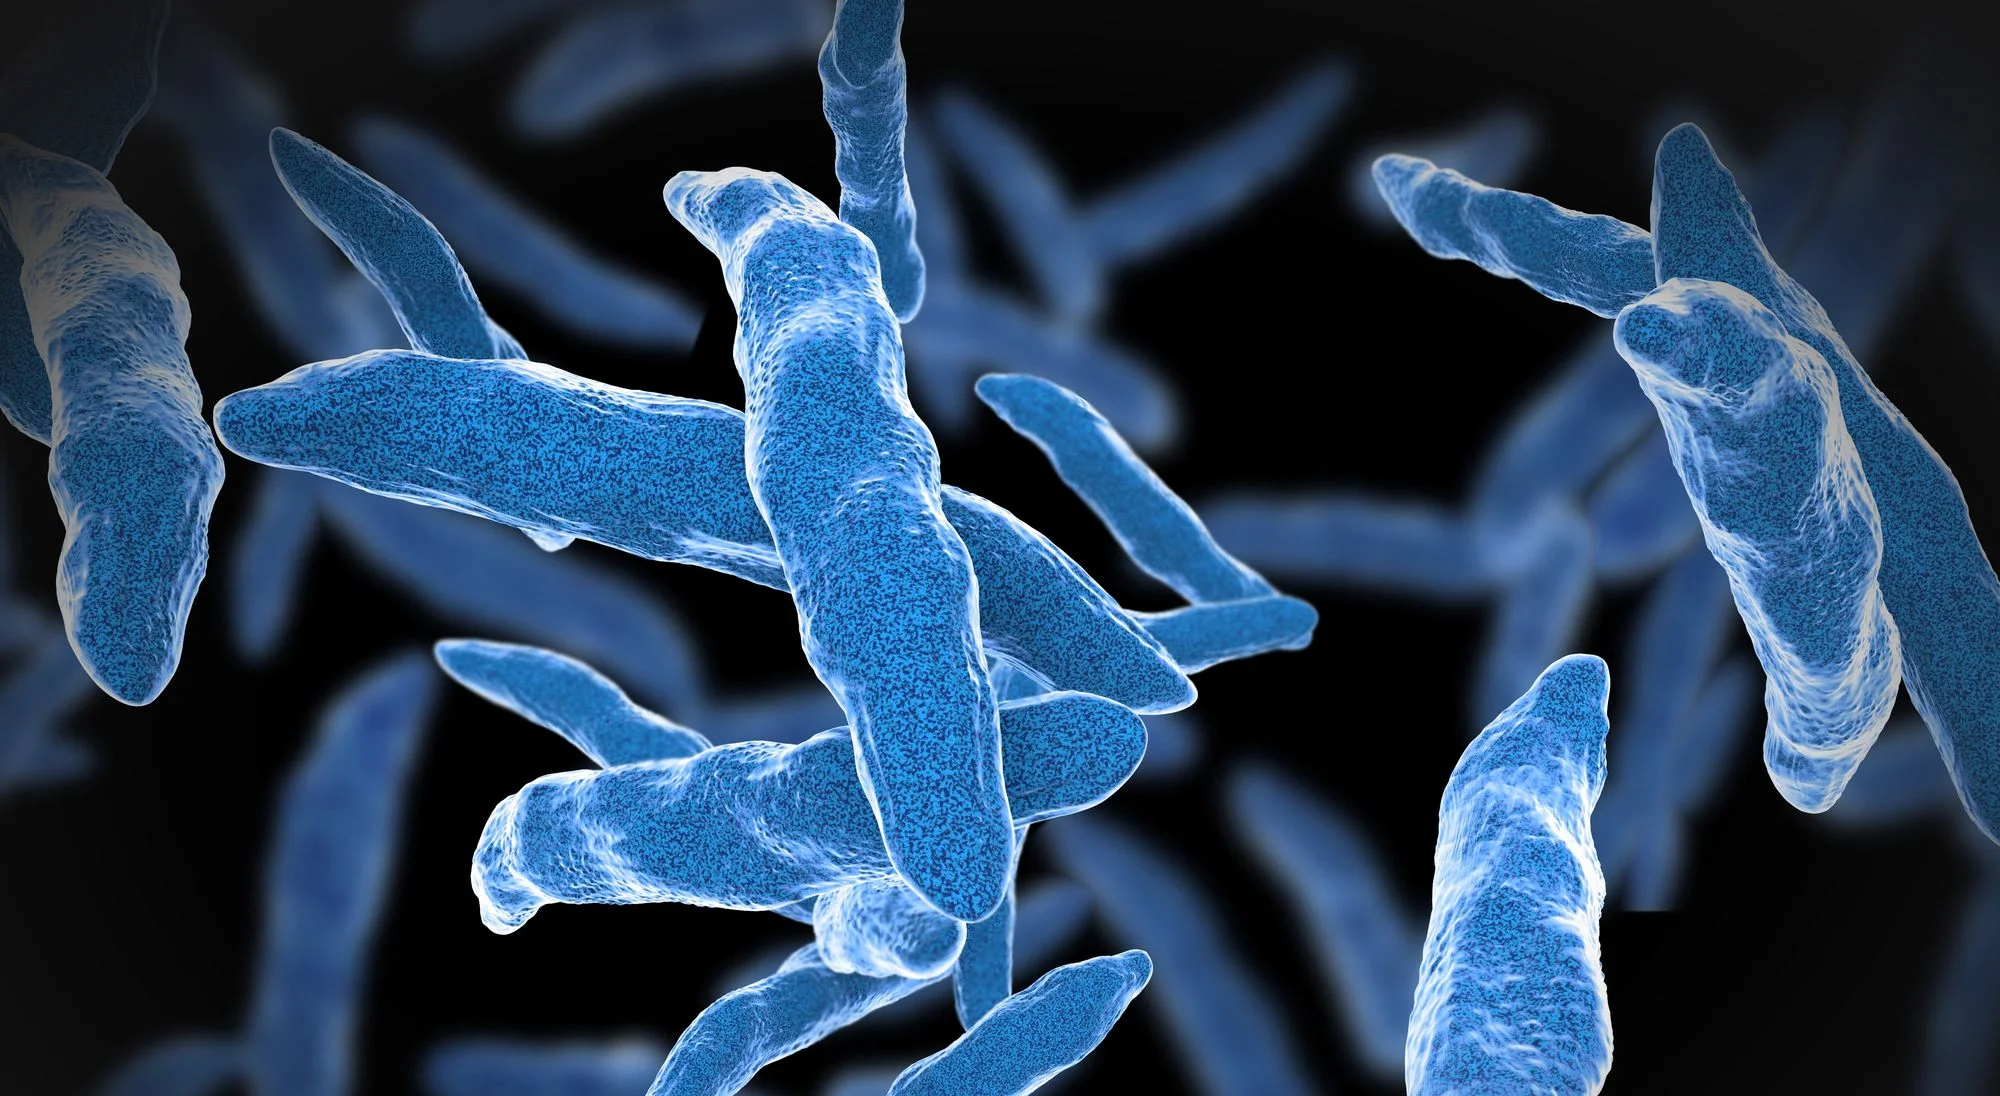 Mikroskopische Aufnahme von Tuberkulose-Bakterien